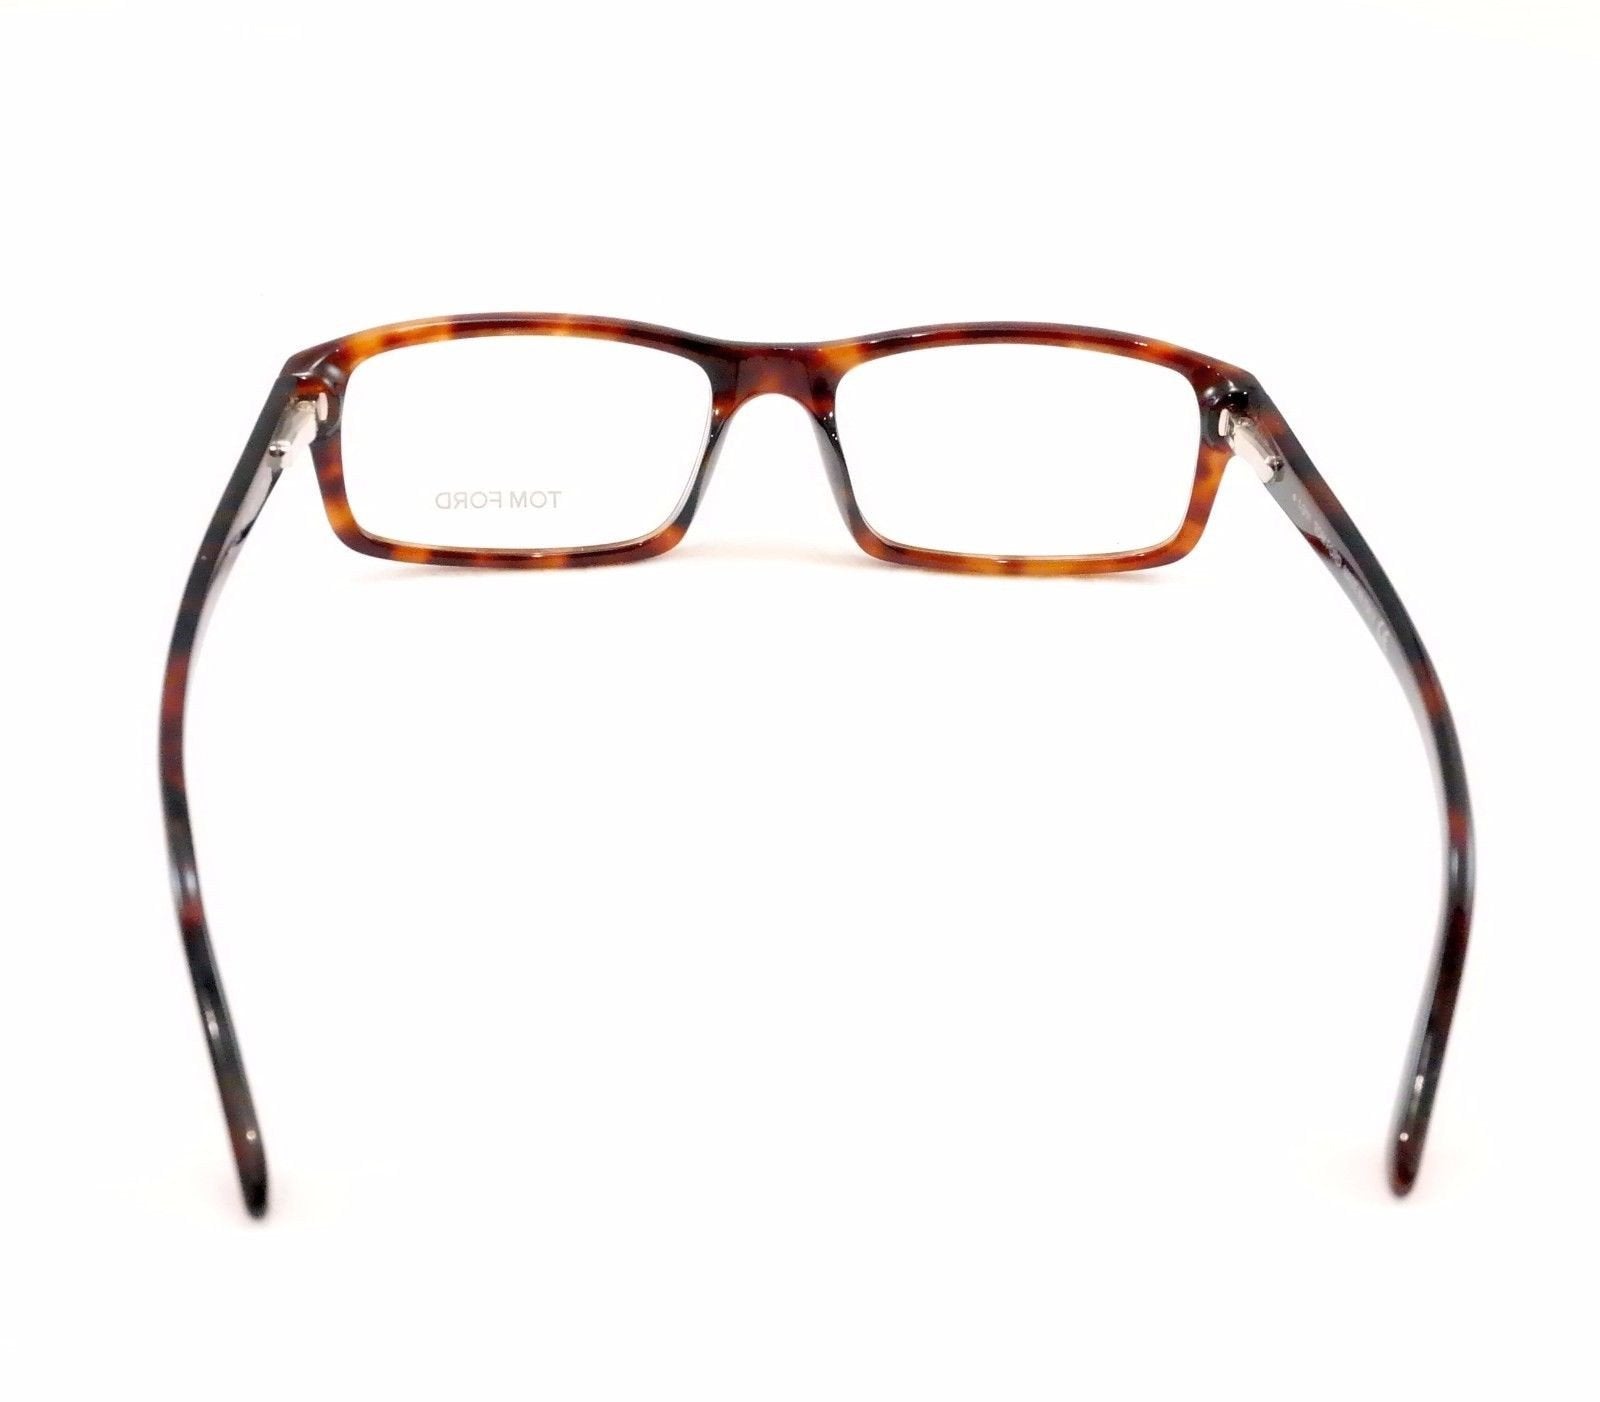 Tom Ford Eyeglasses Frame TF5149 052 Brown Tortoise Plastic Italy Made 55-17-145 - Frame Bay